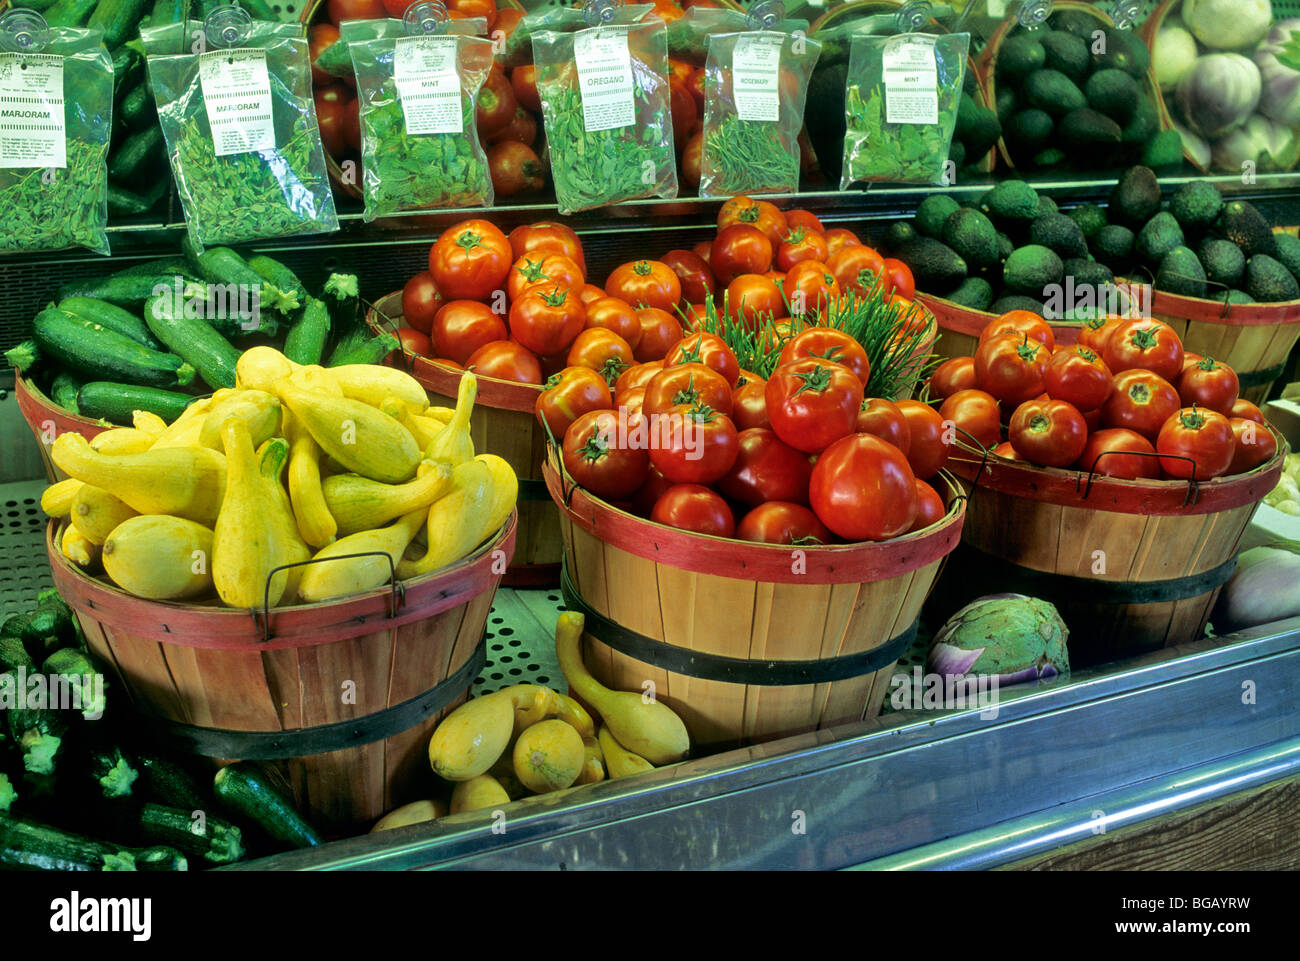 Hortalizas frescas en producir stand, California Foto de stock